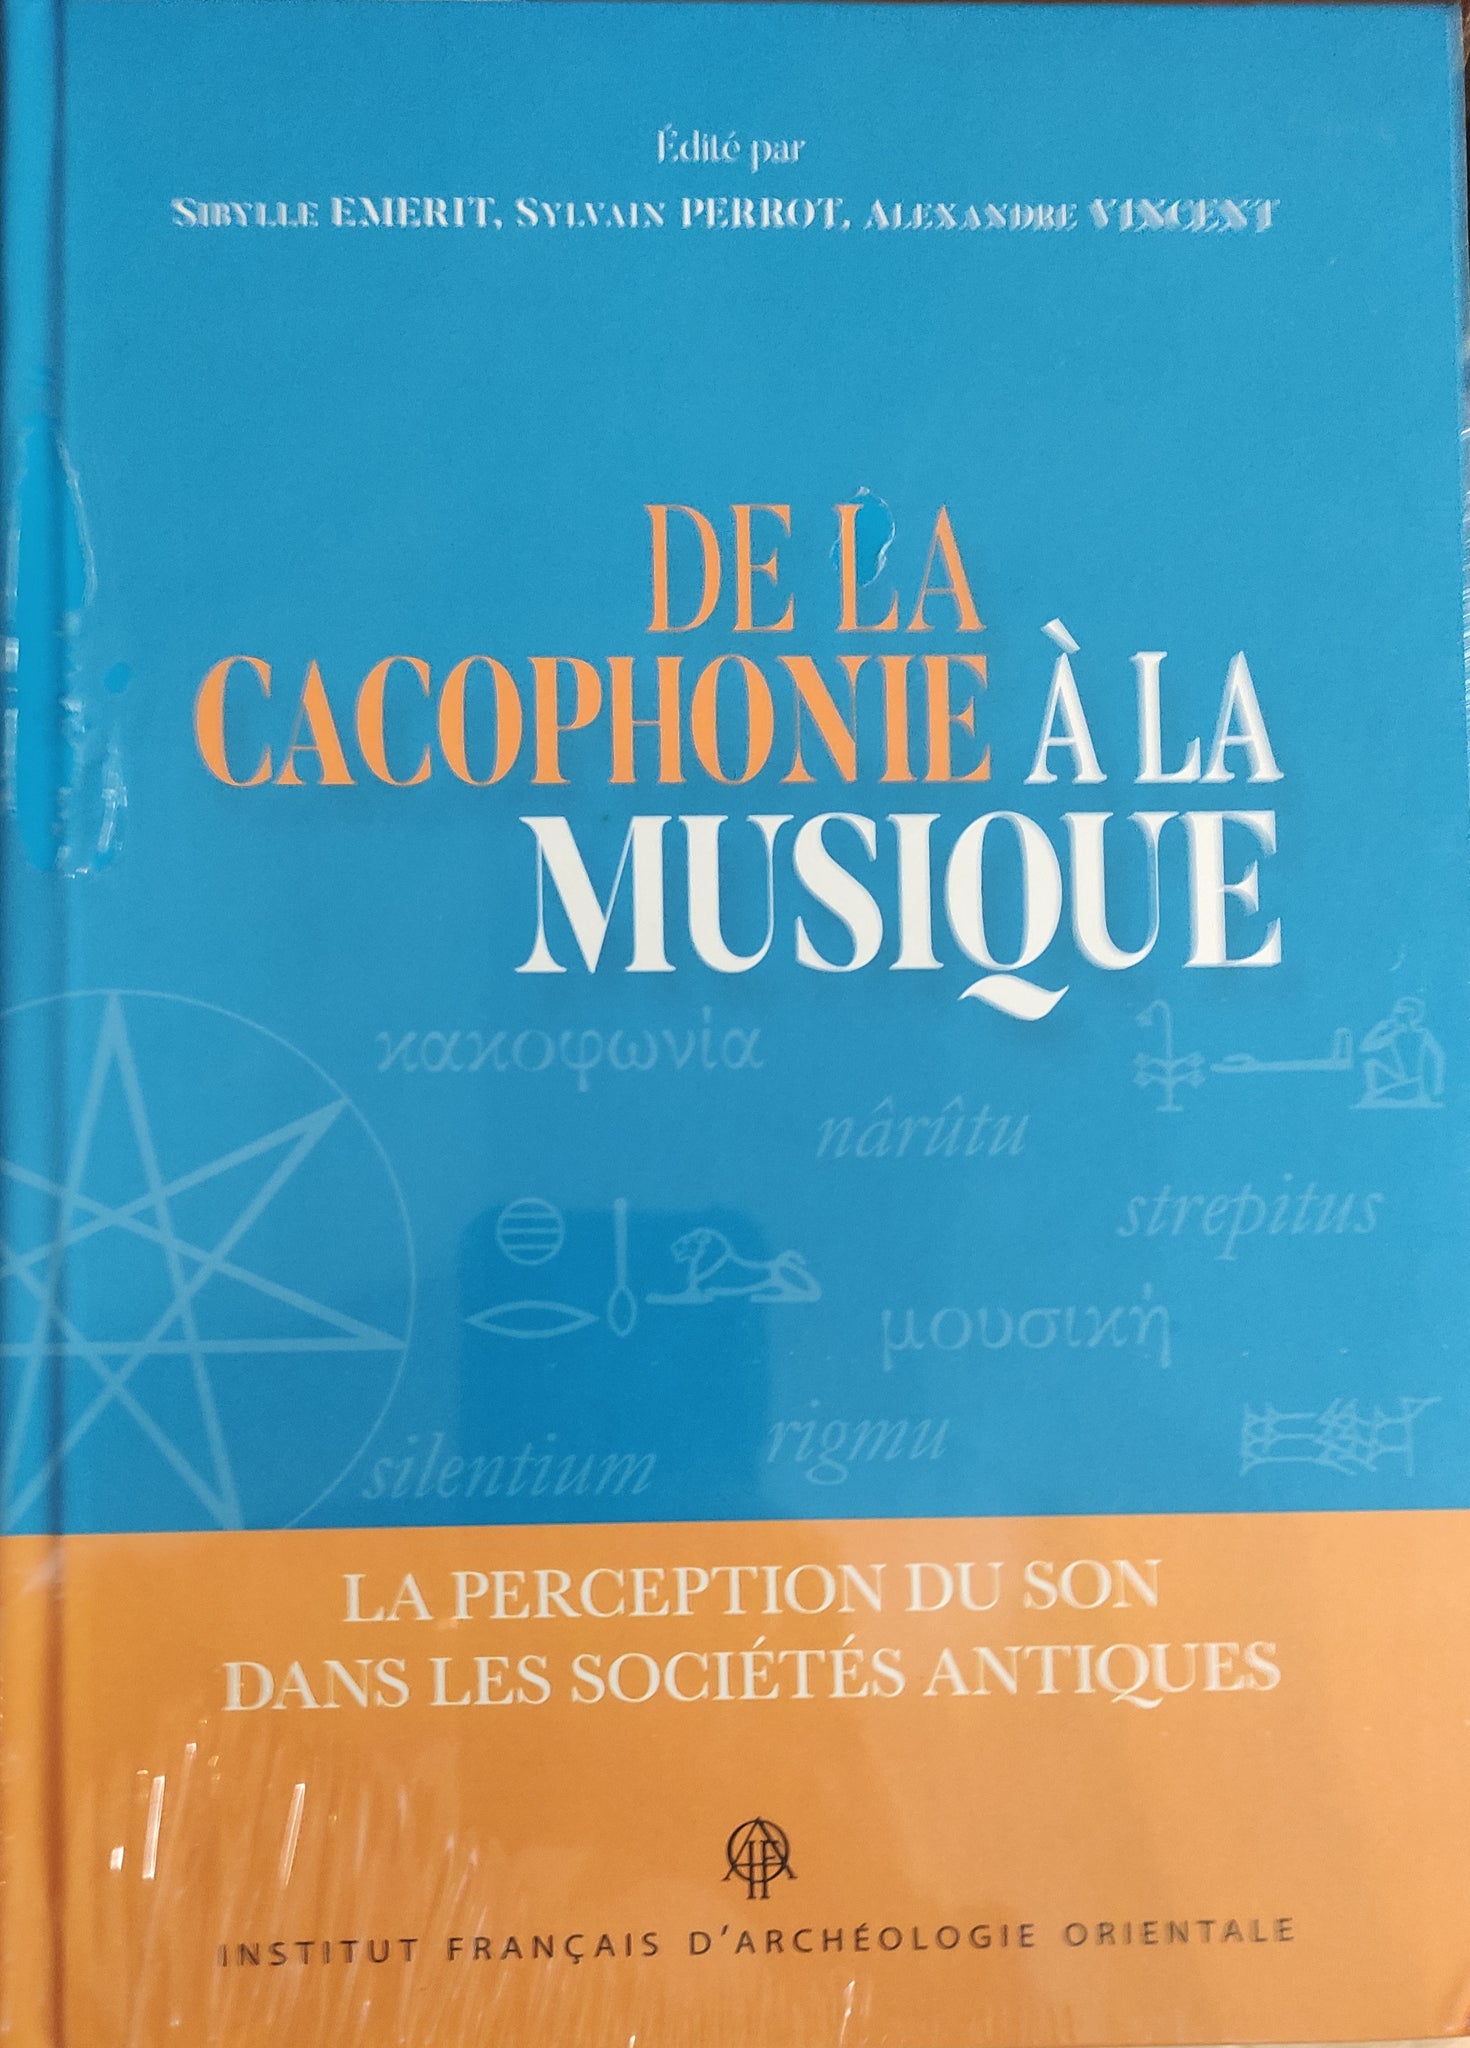 De la cacophonie à la musique: La perception du son dans les sociétés antiques.